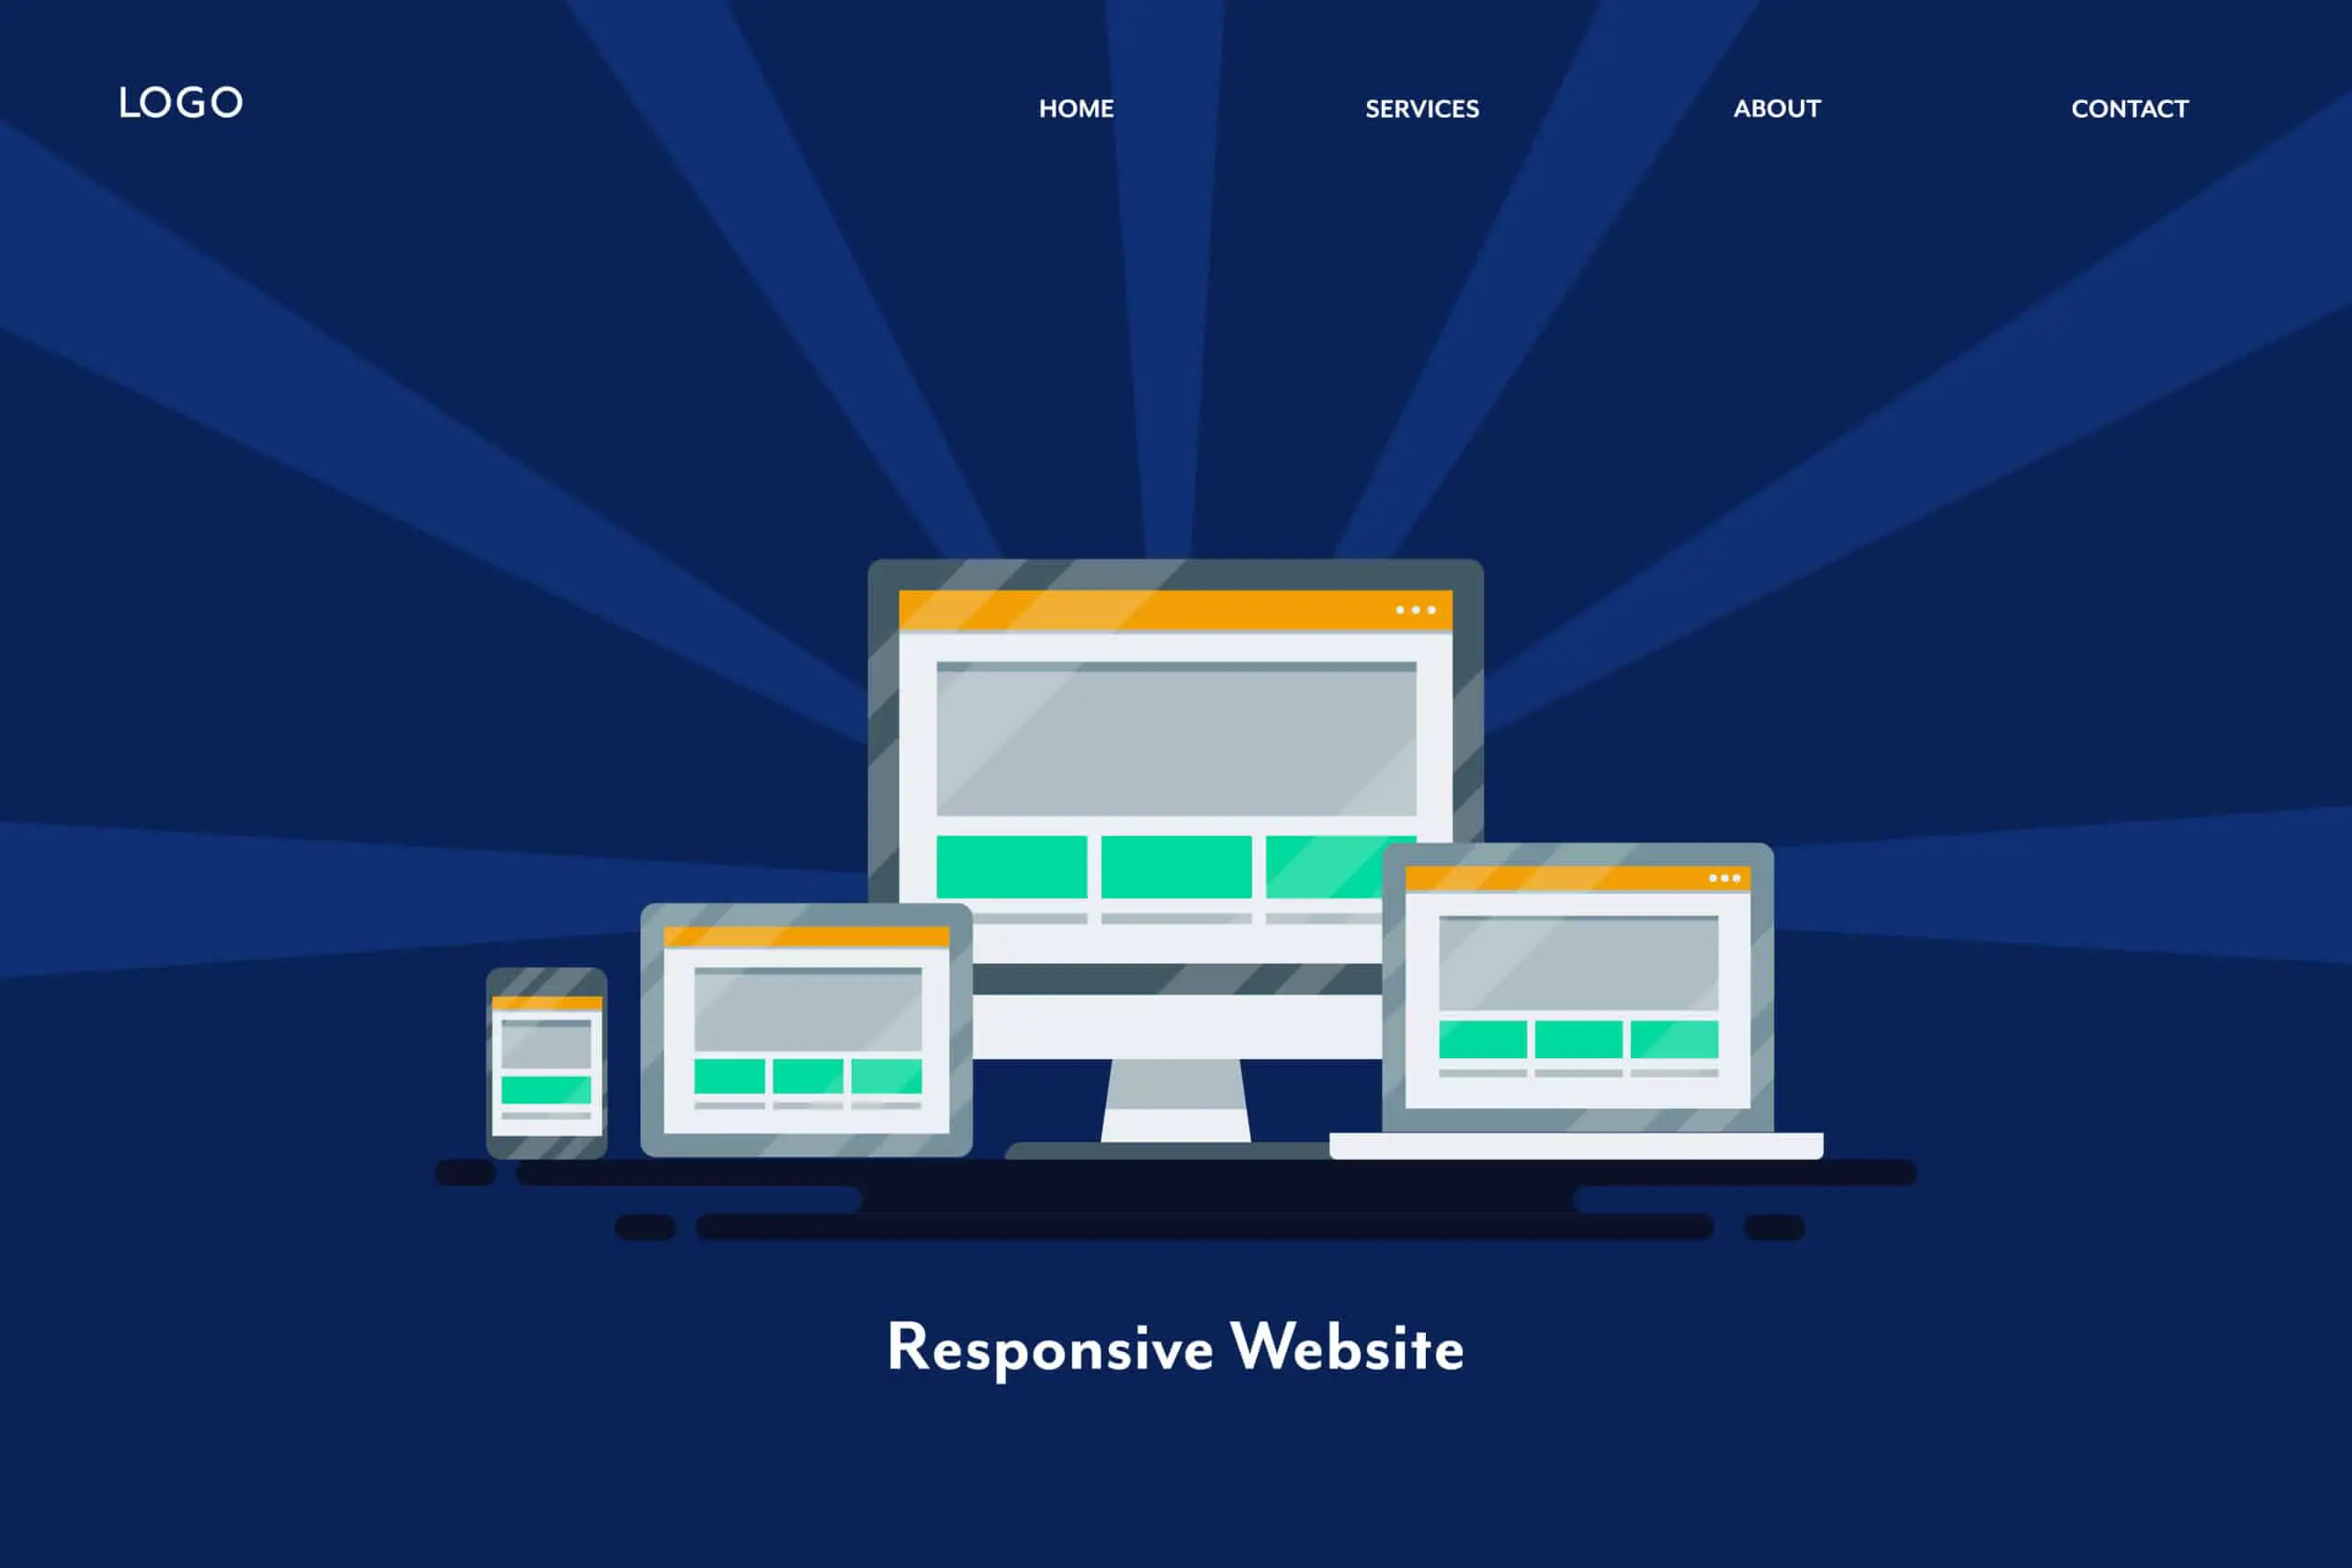 responsive website elements